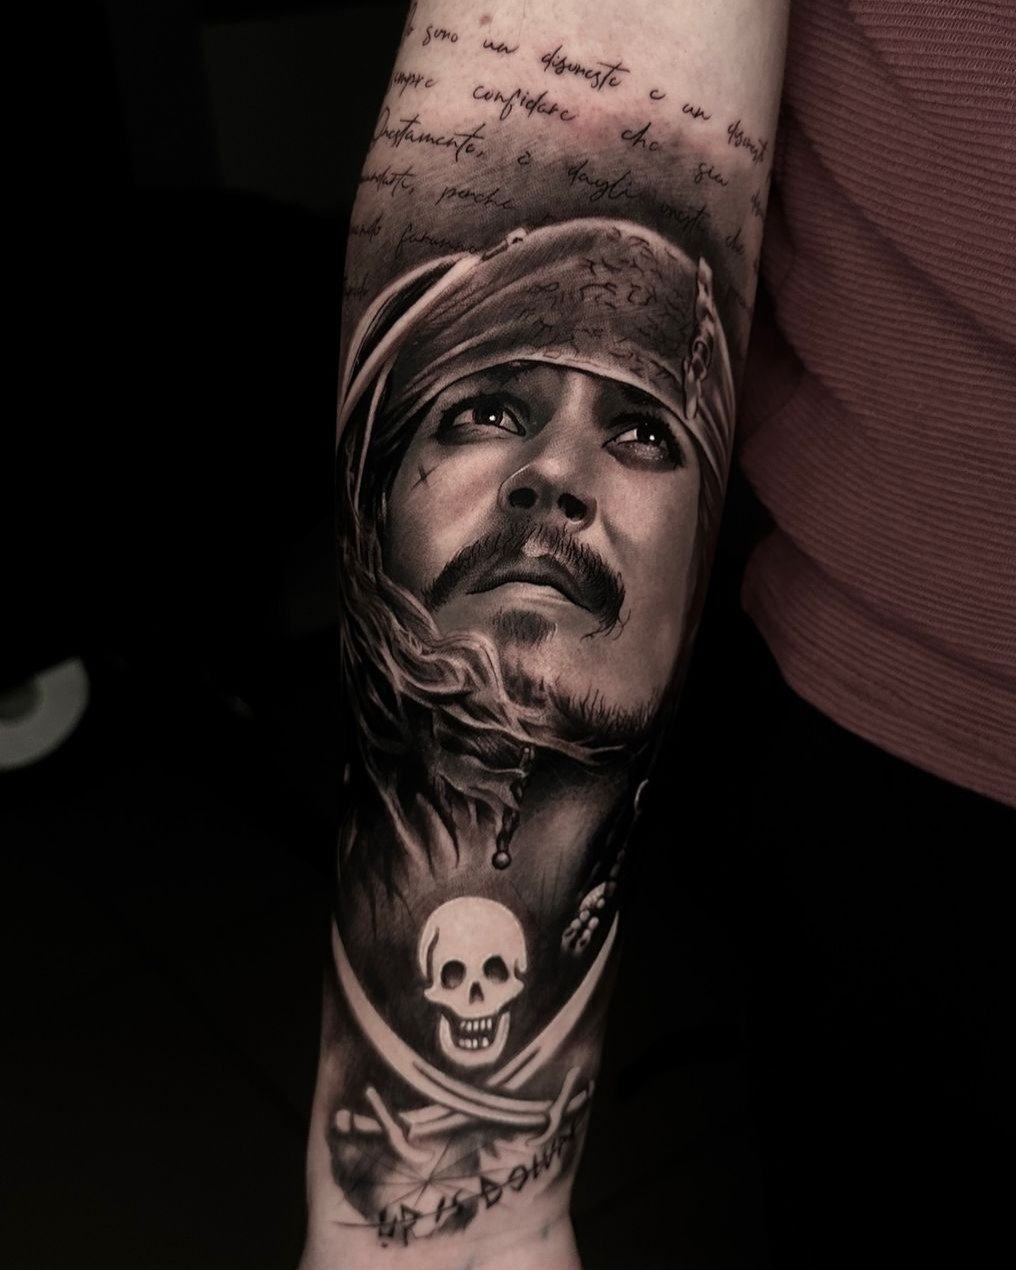 Artista: Manu Say Yes. Pro Team Artist Water Law Tattoo. Tatuaggio in bianco e nero, in stile realistico, di Johnny Depp nei panni di Jack Sparrow.